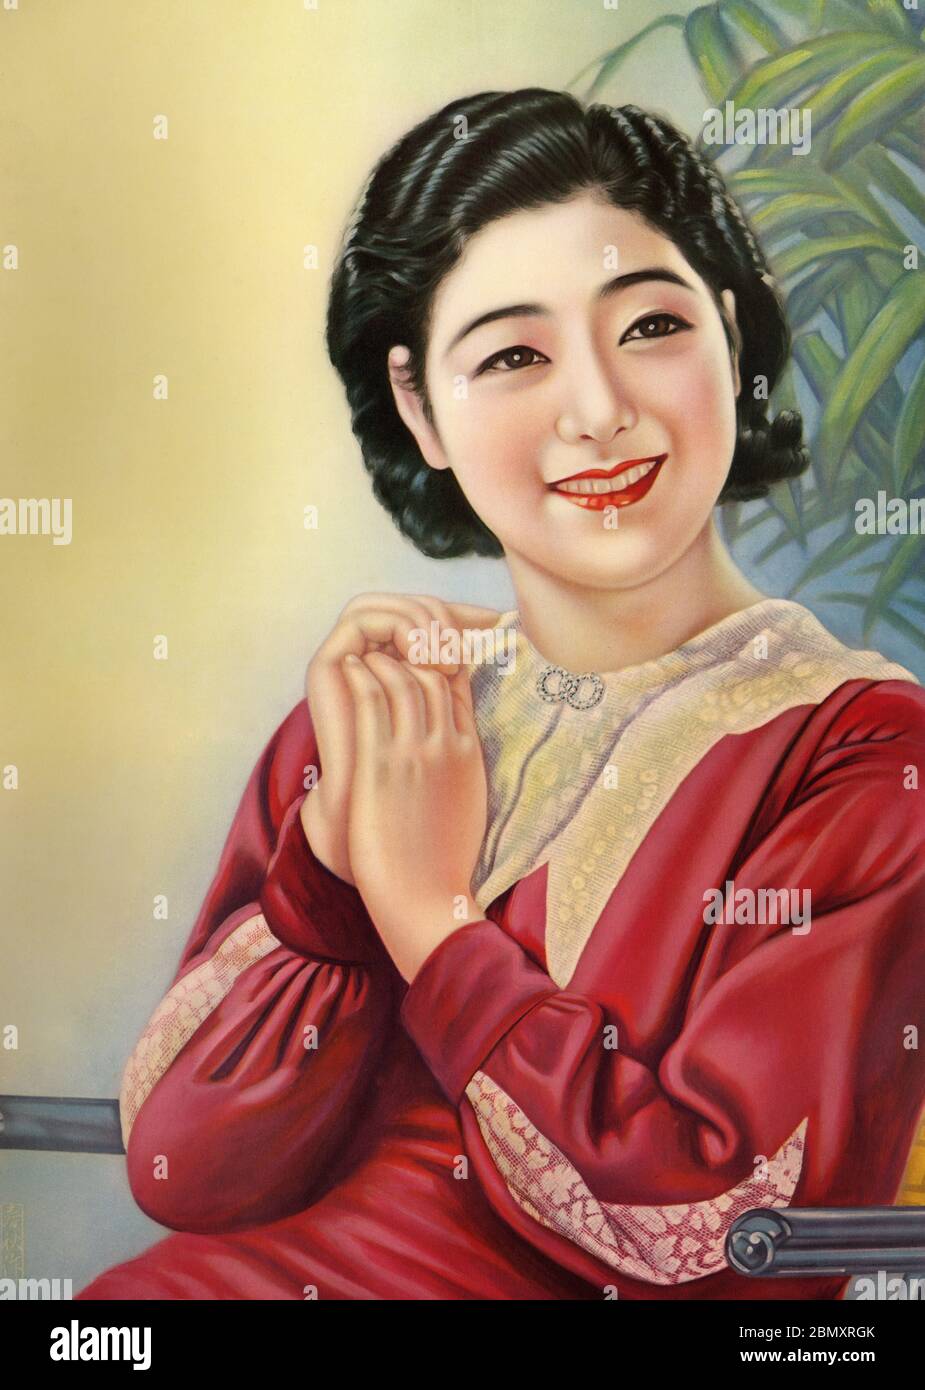 [ 1920er Jahre Japan - Illustration der japanischen Frau in Kleid ] - schöne japanische Frau in einem westlichen Kleid. Dieses Kunstwerk wurde als Plakatmuster (ポスターの原画見本) während der Taisho-Periode (1912-1926) verwendet. Vintage-Poster des 20. Jahrhunderts. Stockfoto